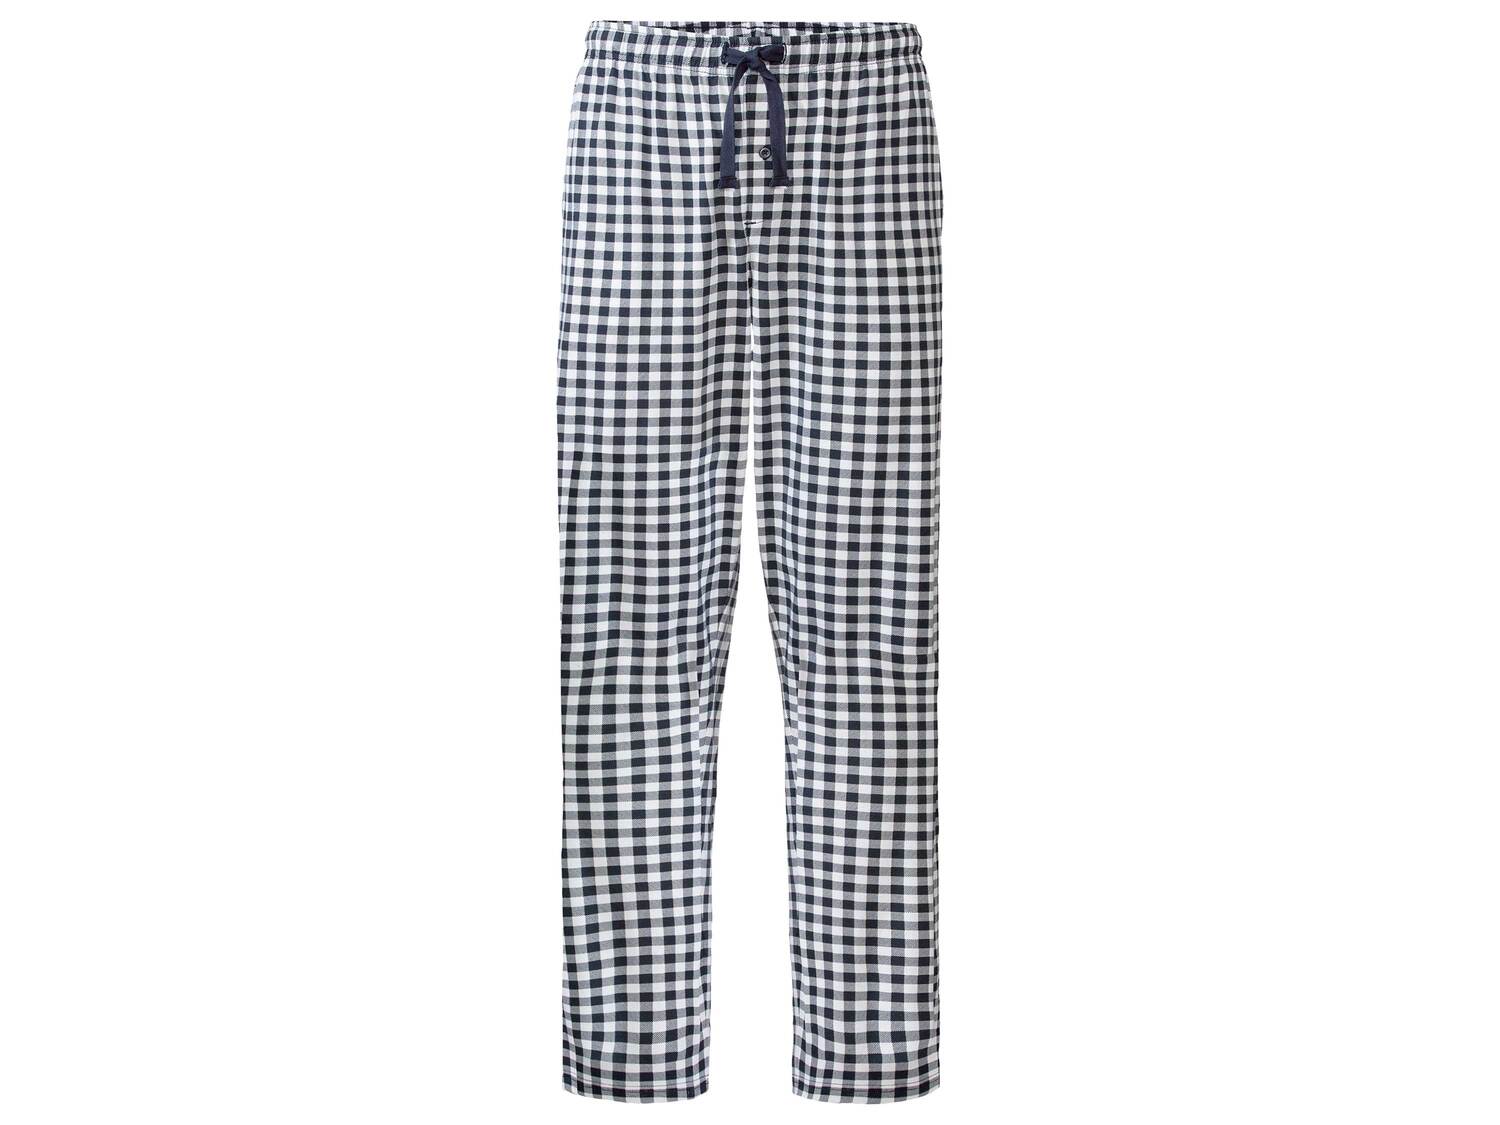 Pyjama , le prix 12.99 € 
- Du S au L selon modèle
- Ex. haut 80 % coton et ...